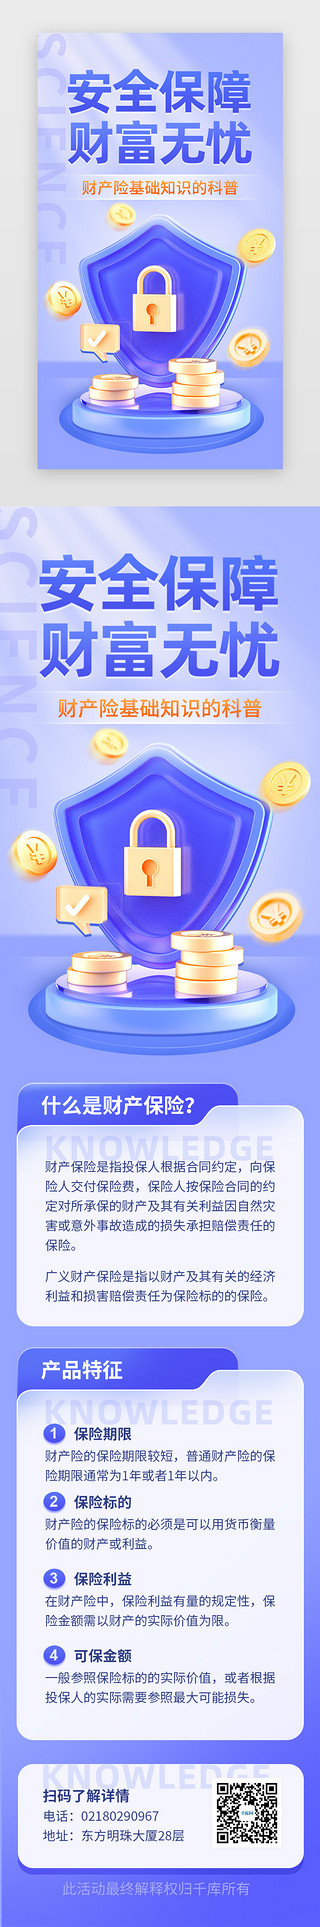 地震科普知识UI设计素材_财产保险知识科普app主界面立体蓝紫盾牌